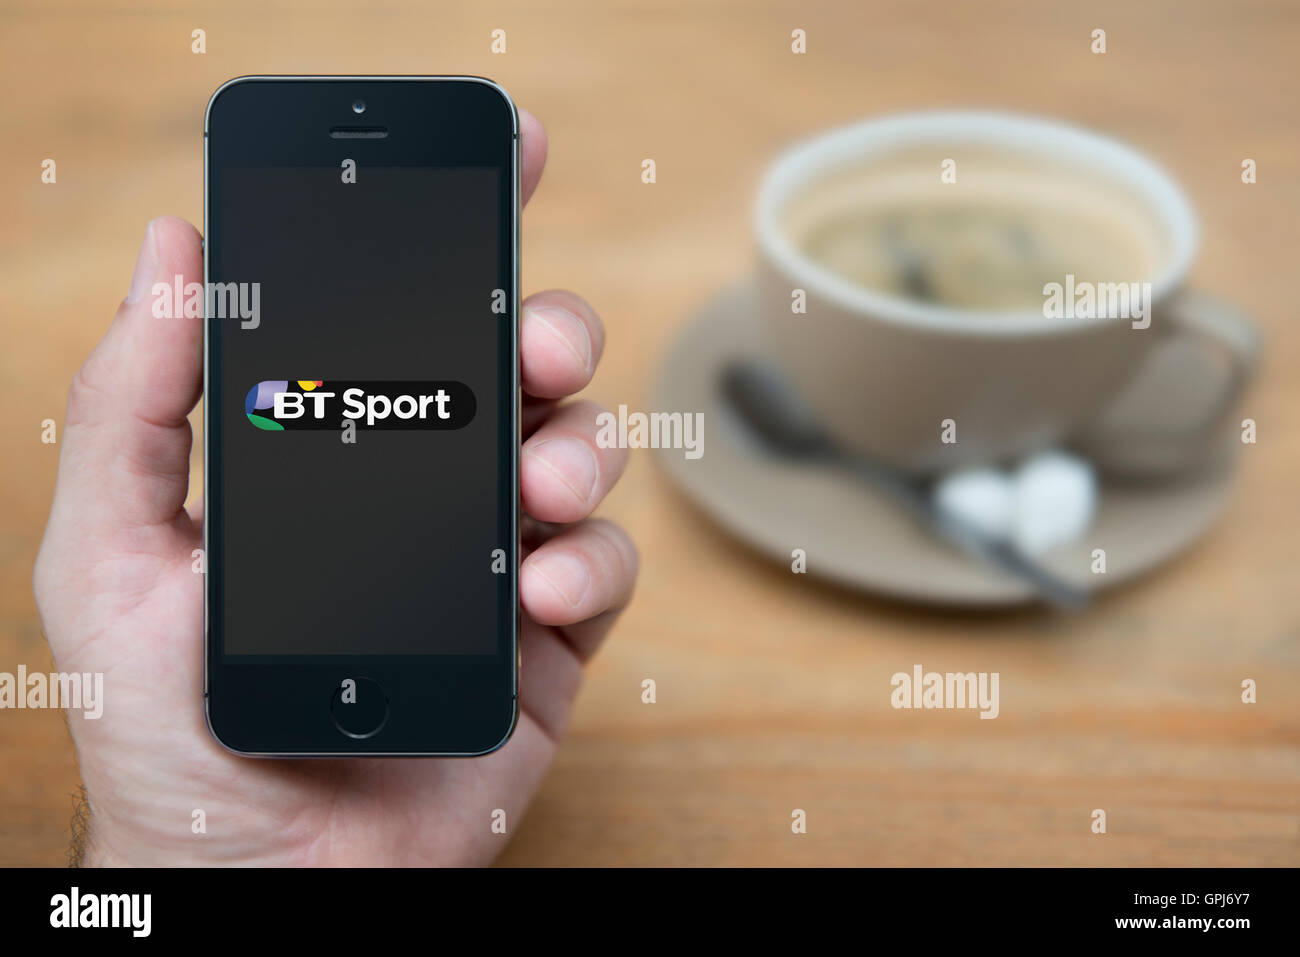 Un homme se penche sur son iPhone qui affiche le logo de station de télévision Sport BT, avec une tasse de café (usage éditorial uniquement). Banque D'Images